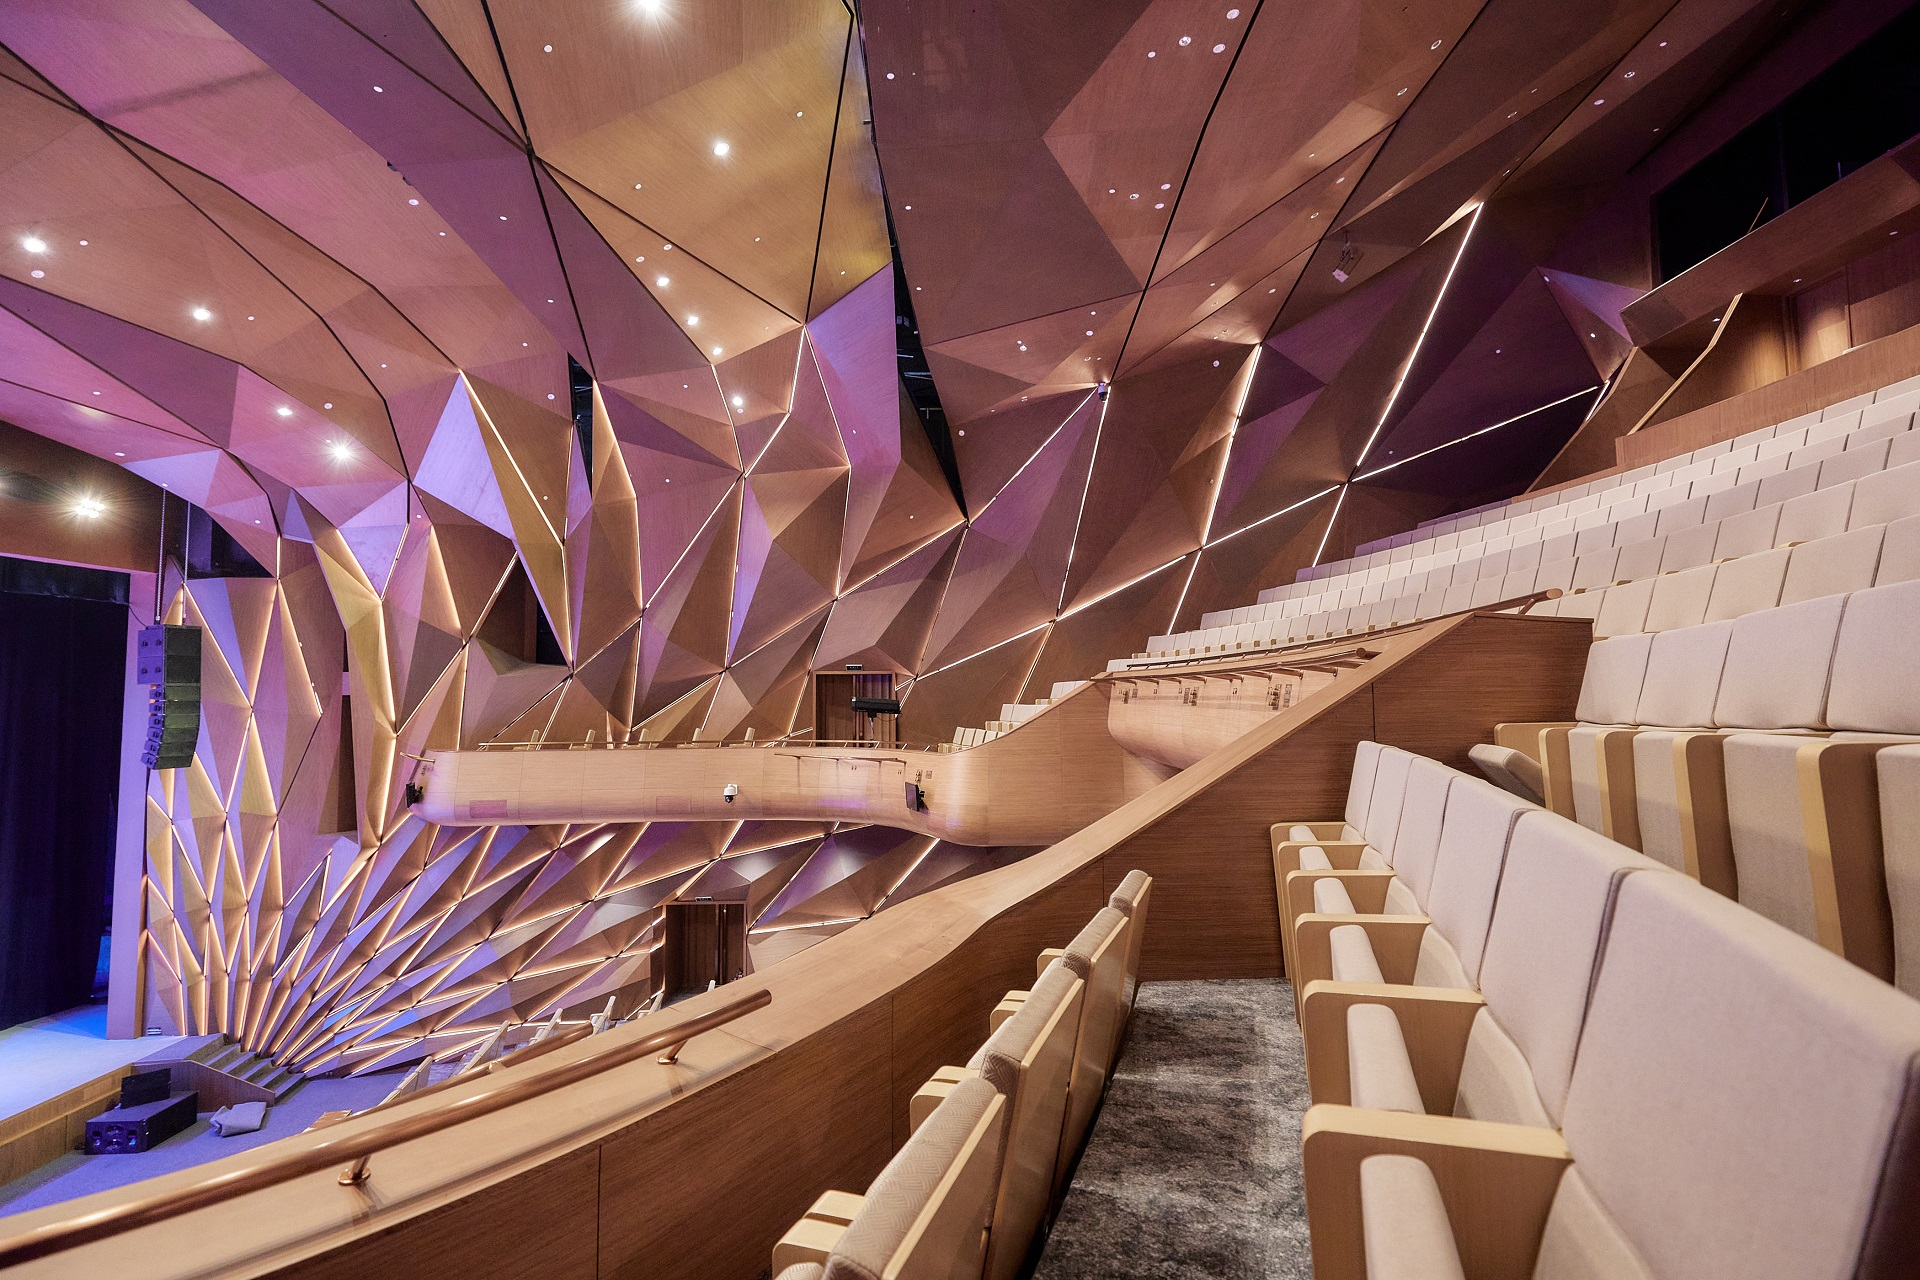 Khán giả được thưởng thức âm nhạc trong không gian nghệ thuật đẳng cấp với hệ thống âm thanh hiện đại bậc nhất thế giới của Nhà hát Hồ Gươm.